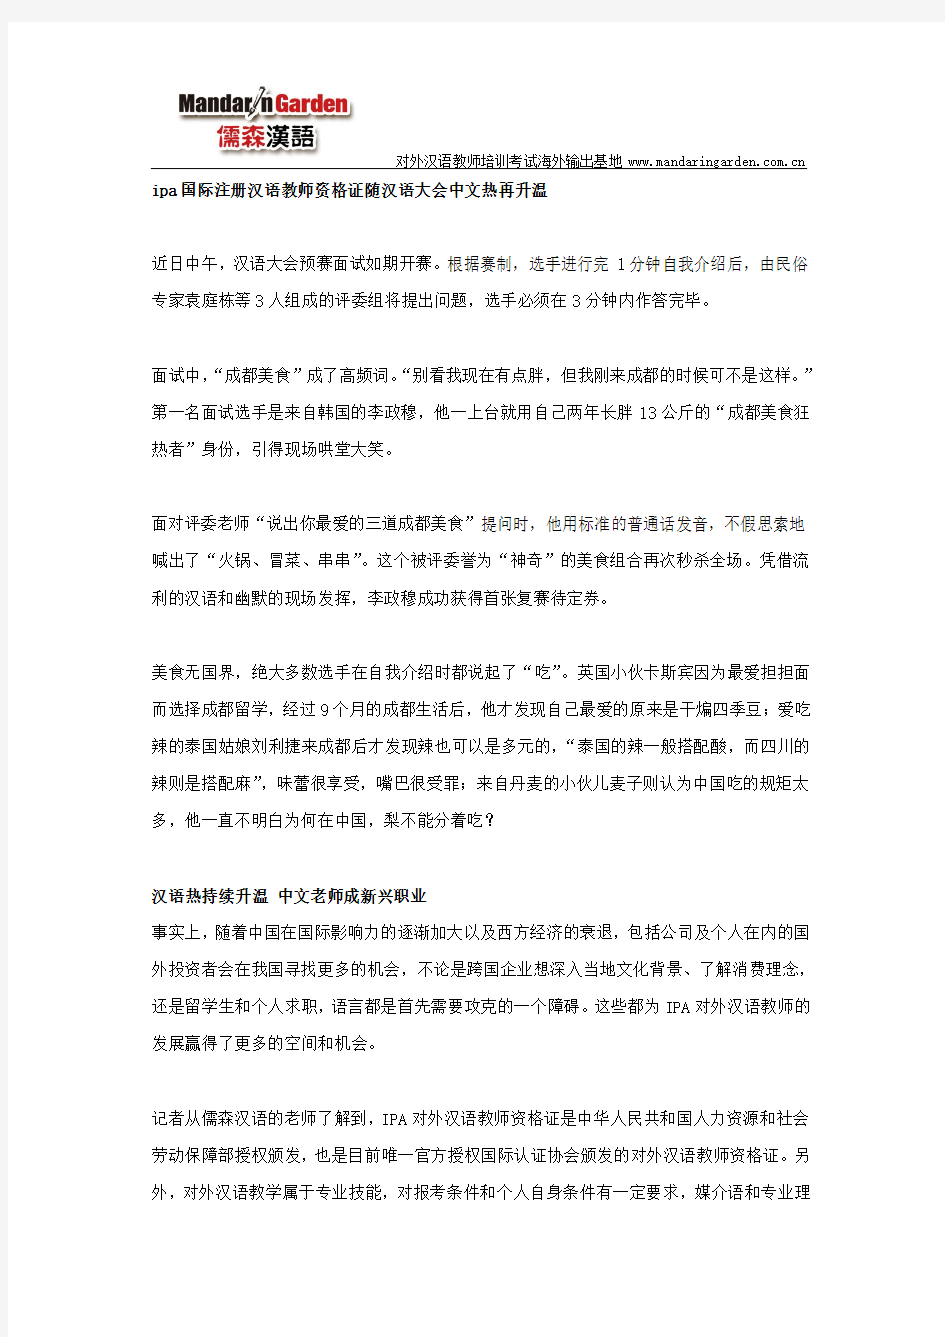 ipa国际注册汉语教师资格证随汉语大会中文热再升温